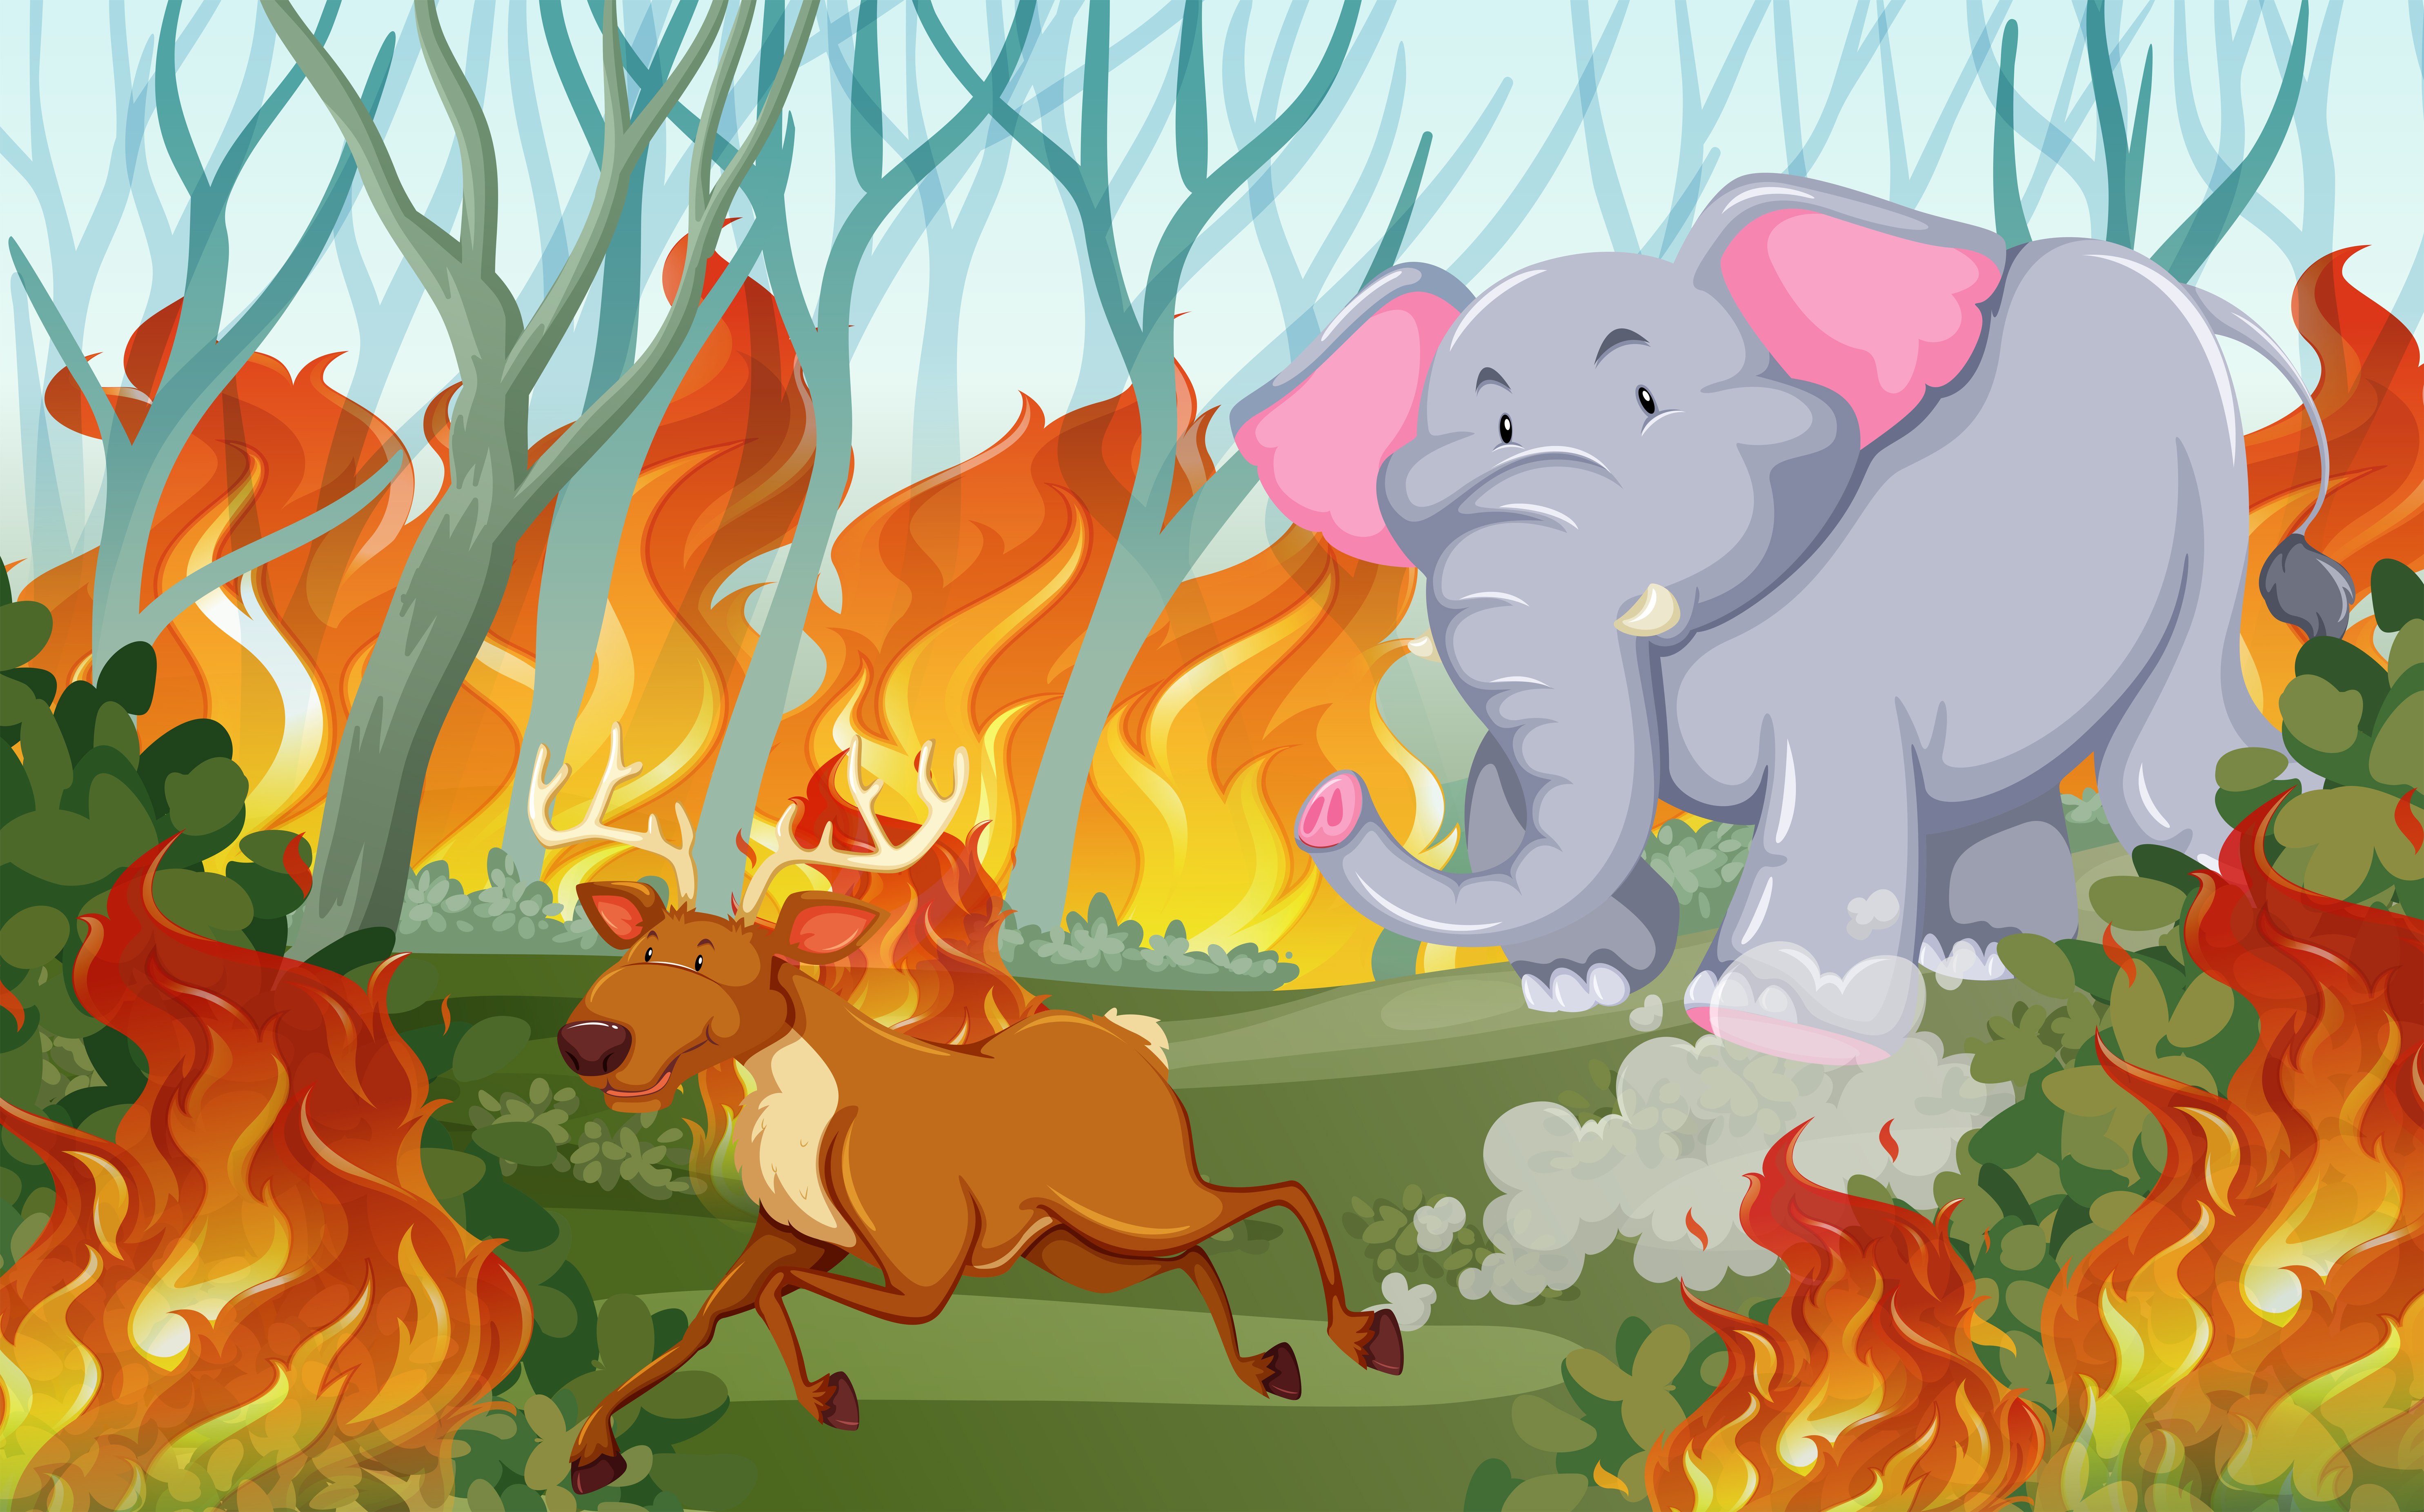 картинки лес в огне для детей